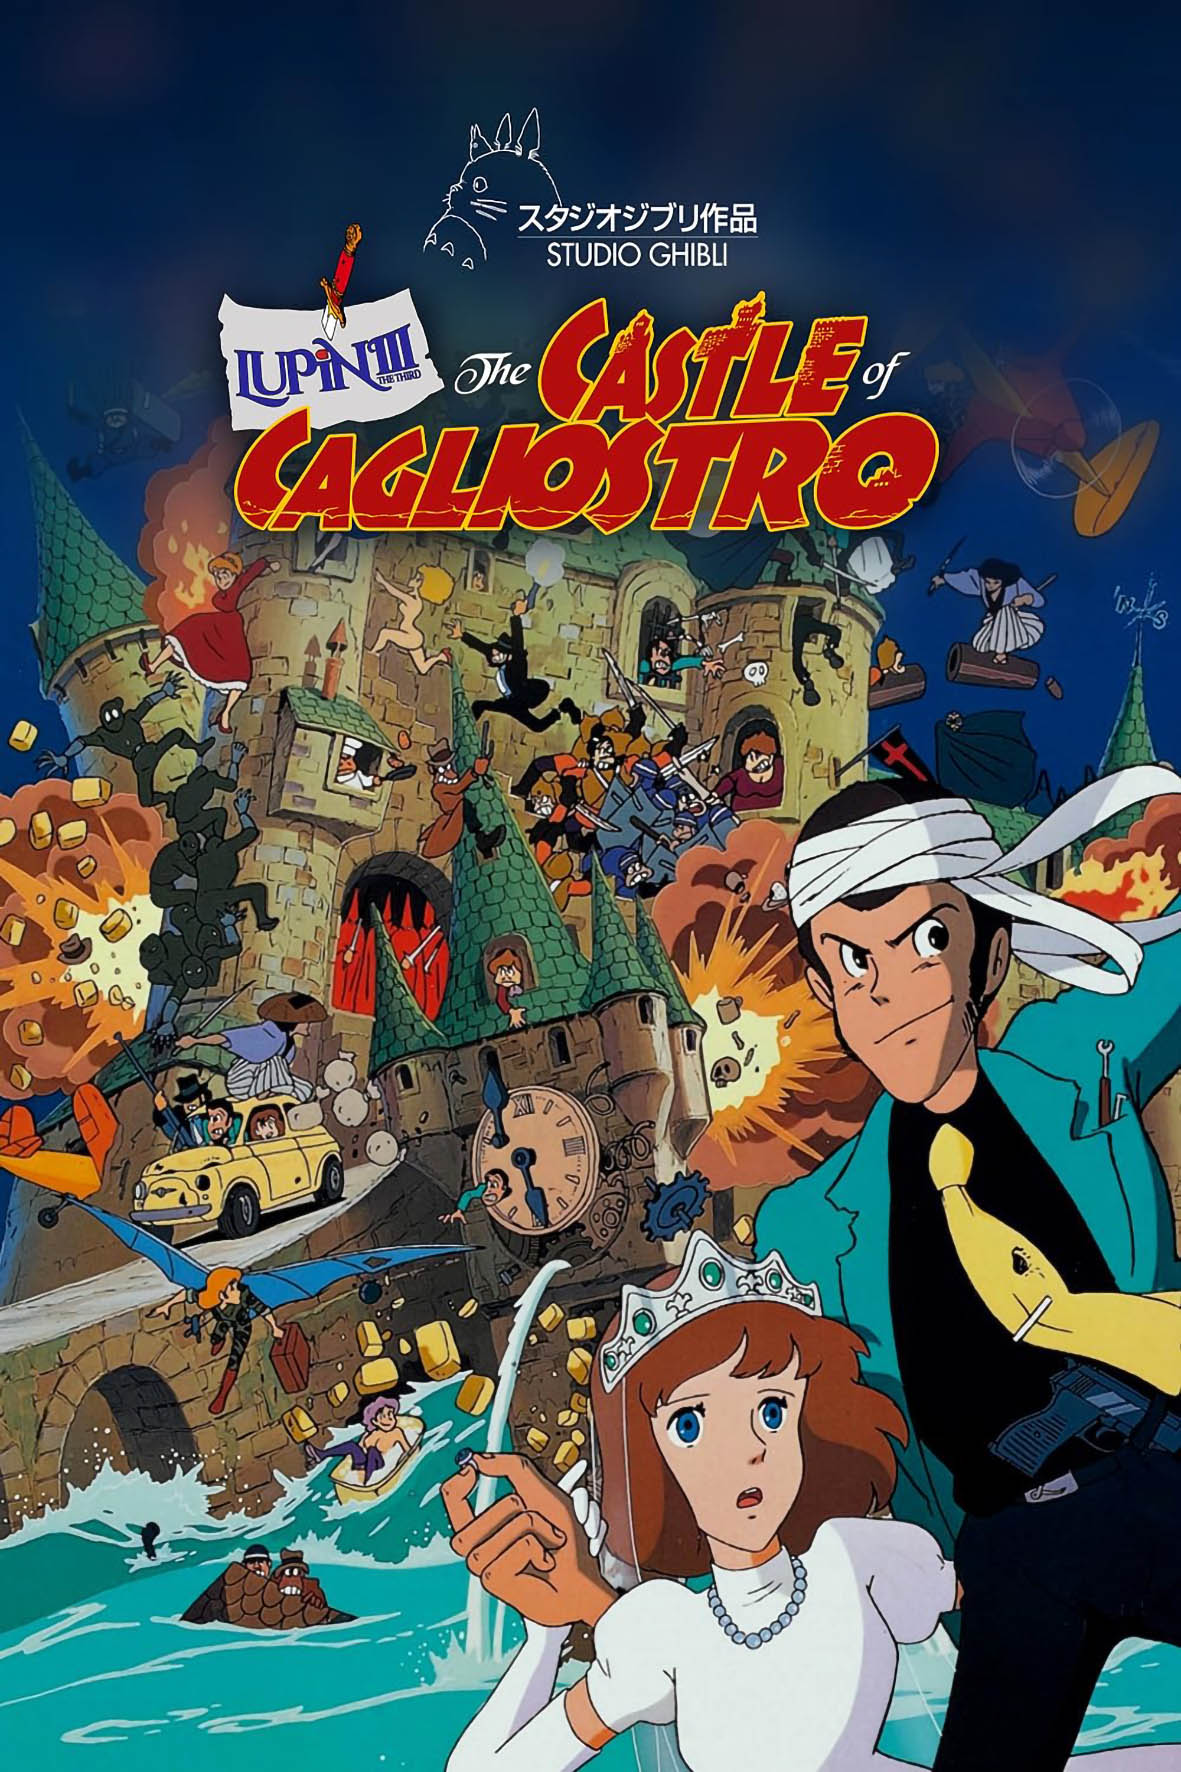 Lupin III: Το κάστρο του Καλιόστρο (με υπότιτλους)